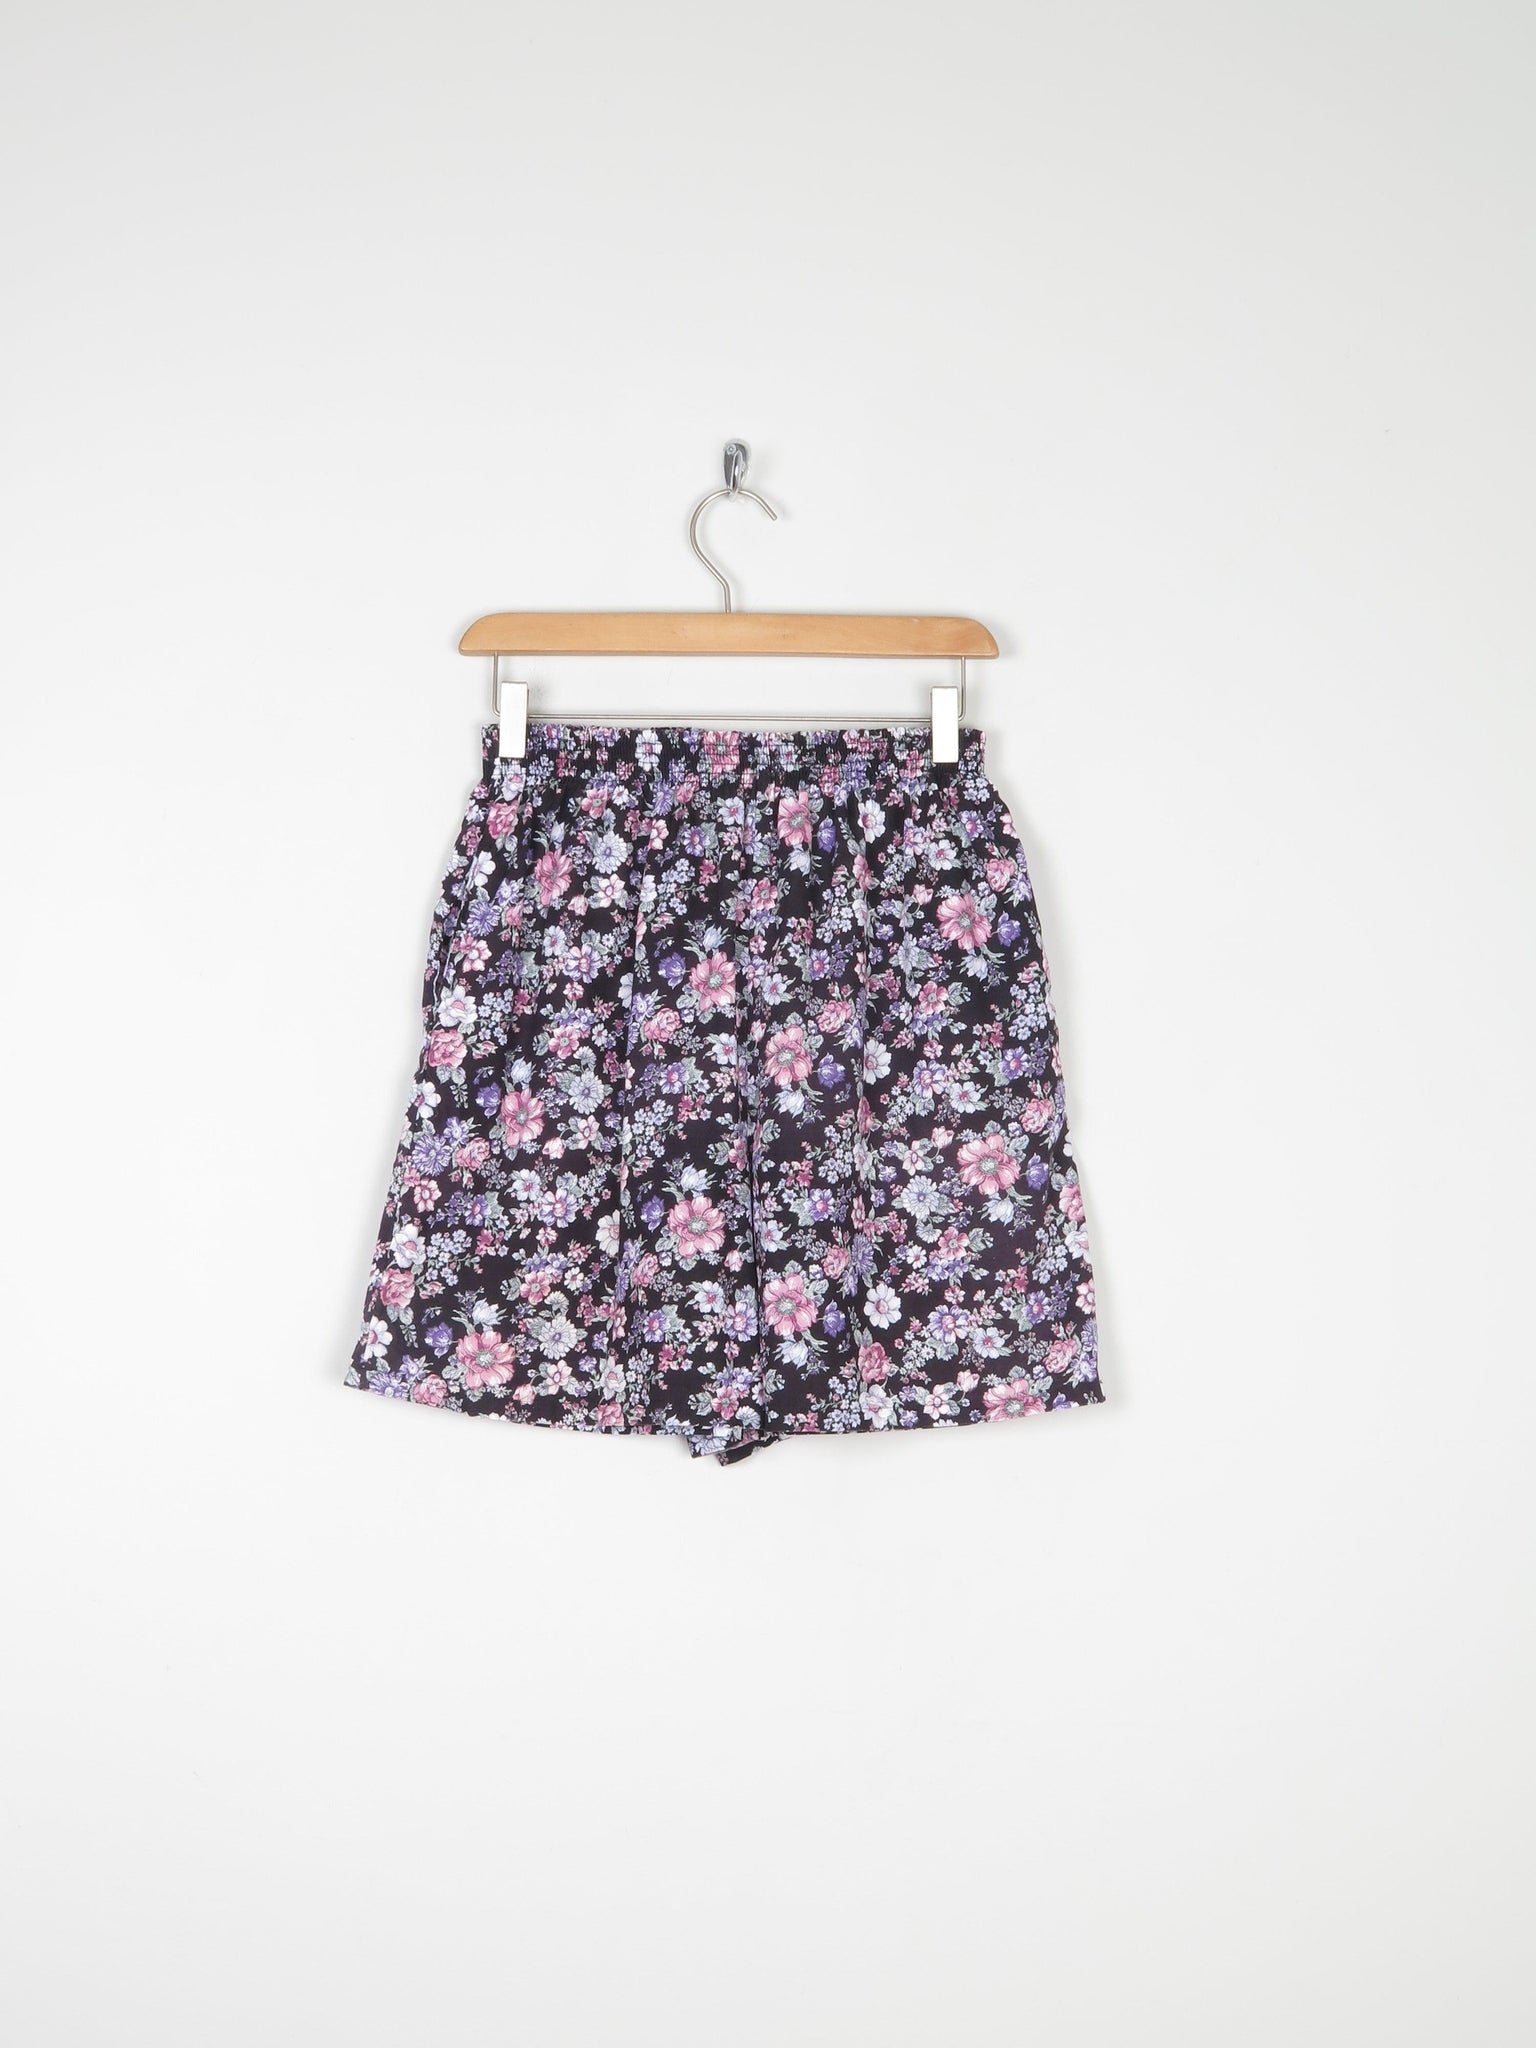 Vintage Floral Bermuda Shorts S - The Harlequin